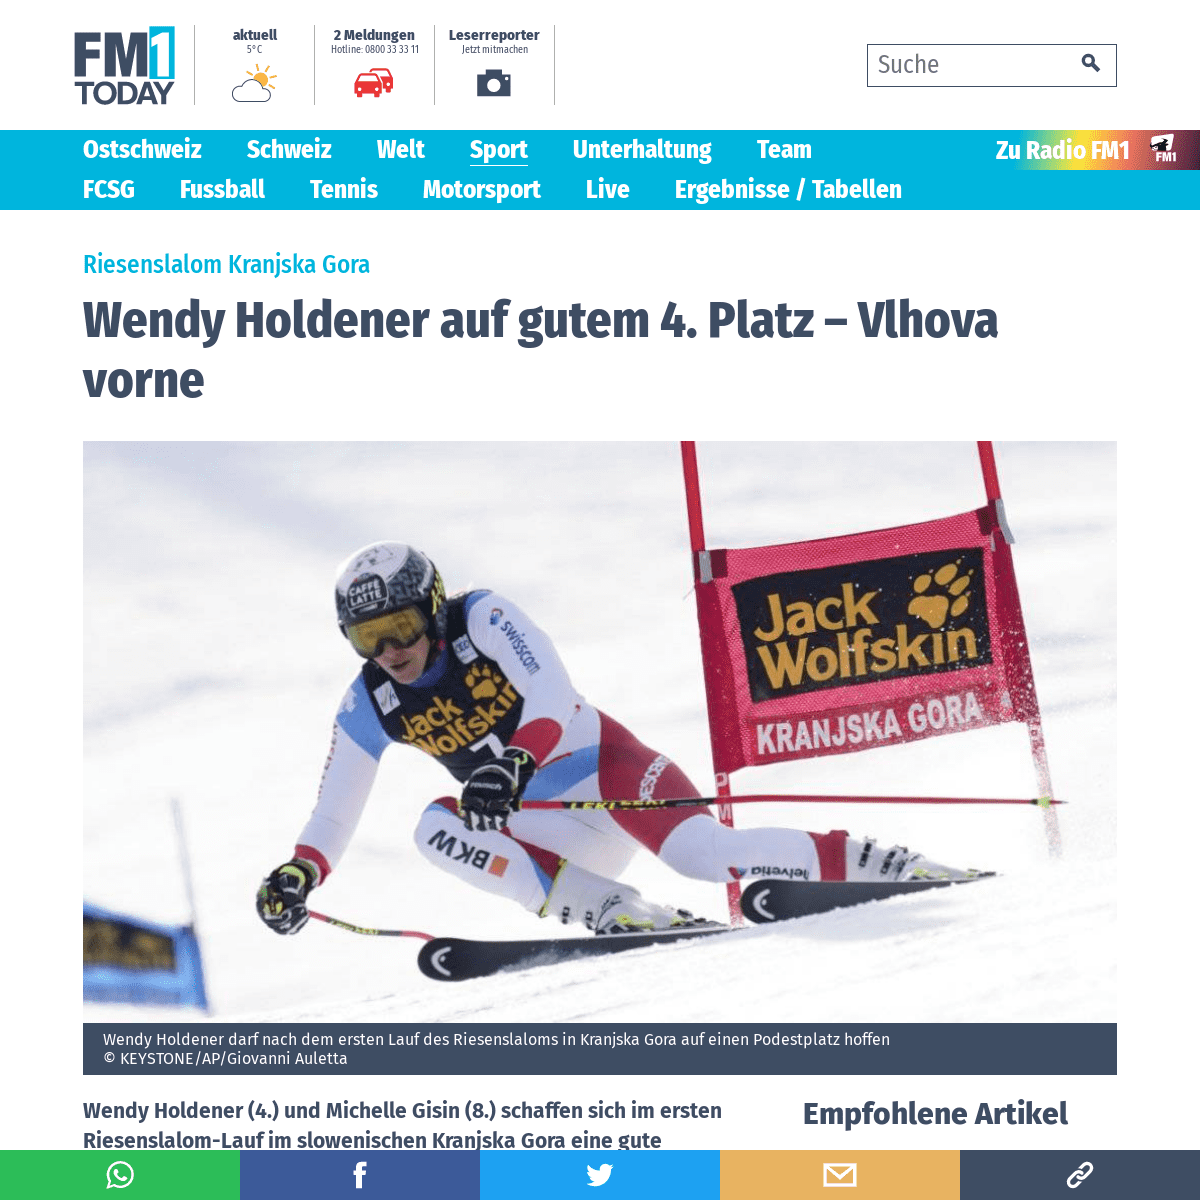 A complete backup of www.fm1today.ch/sport/wintersport/wendy-holdener-auf-gutem-4-platz-136373986